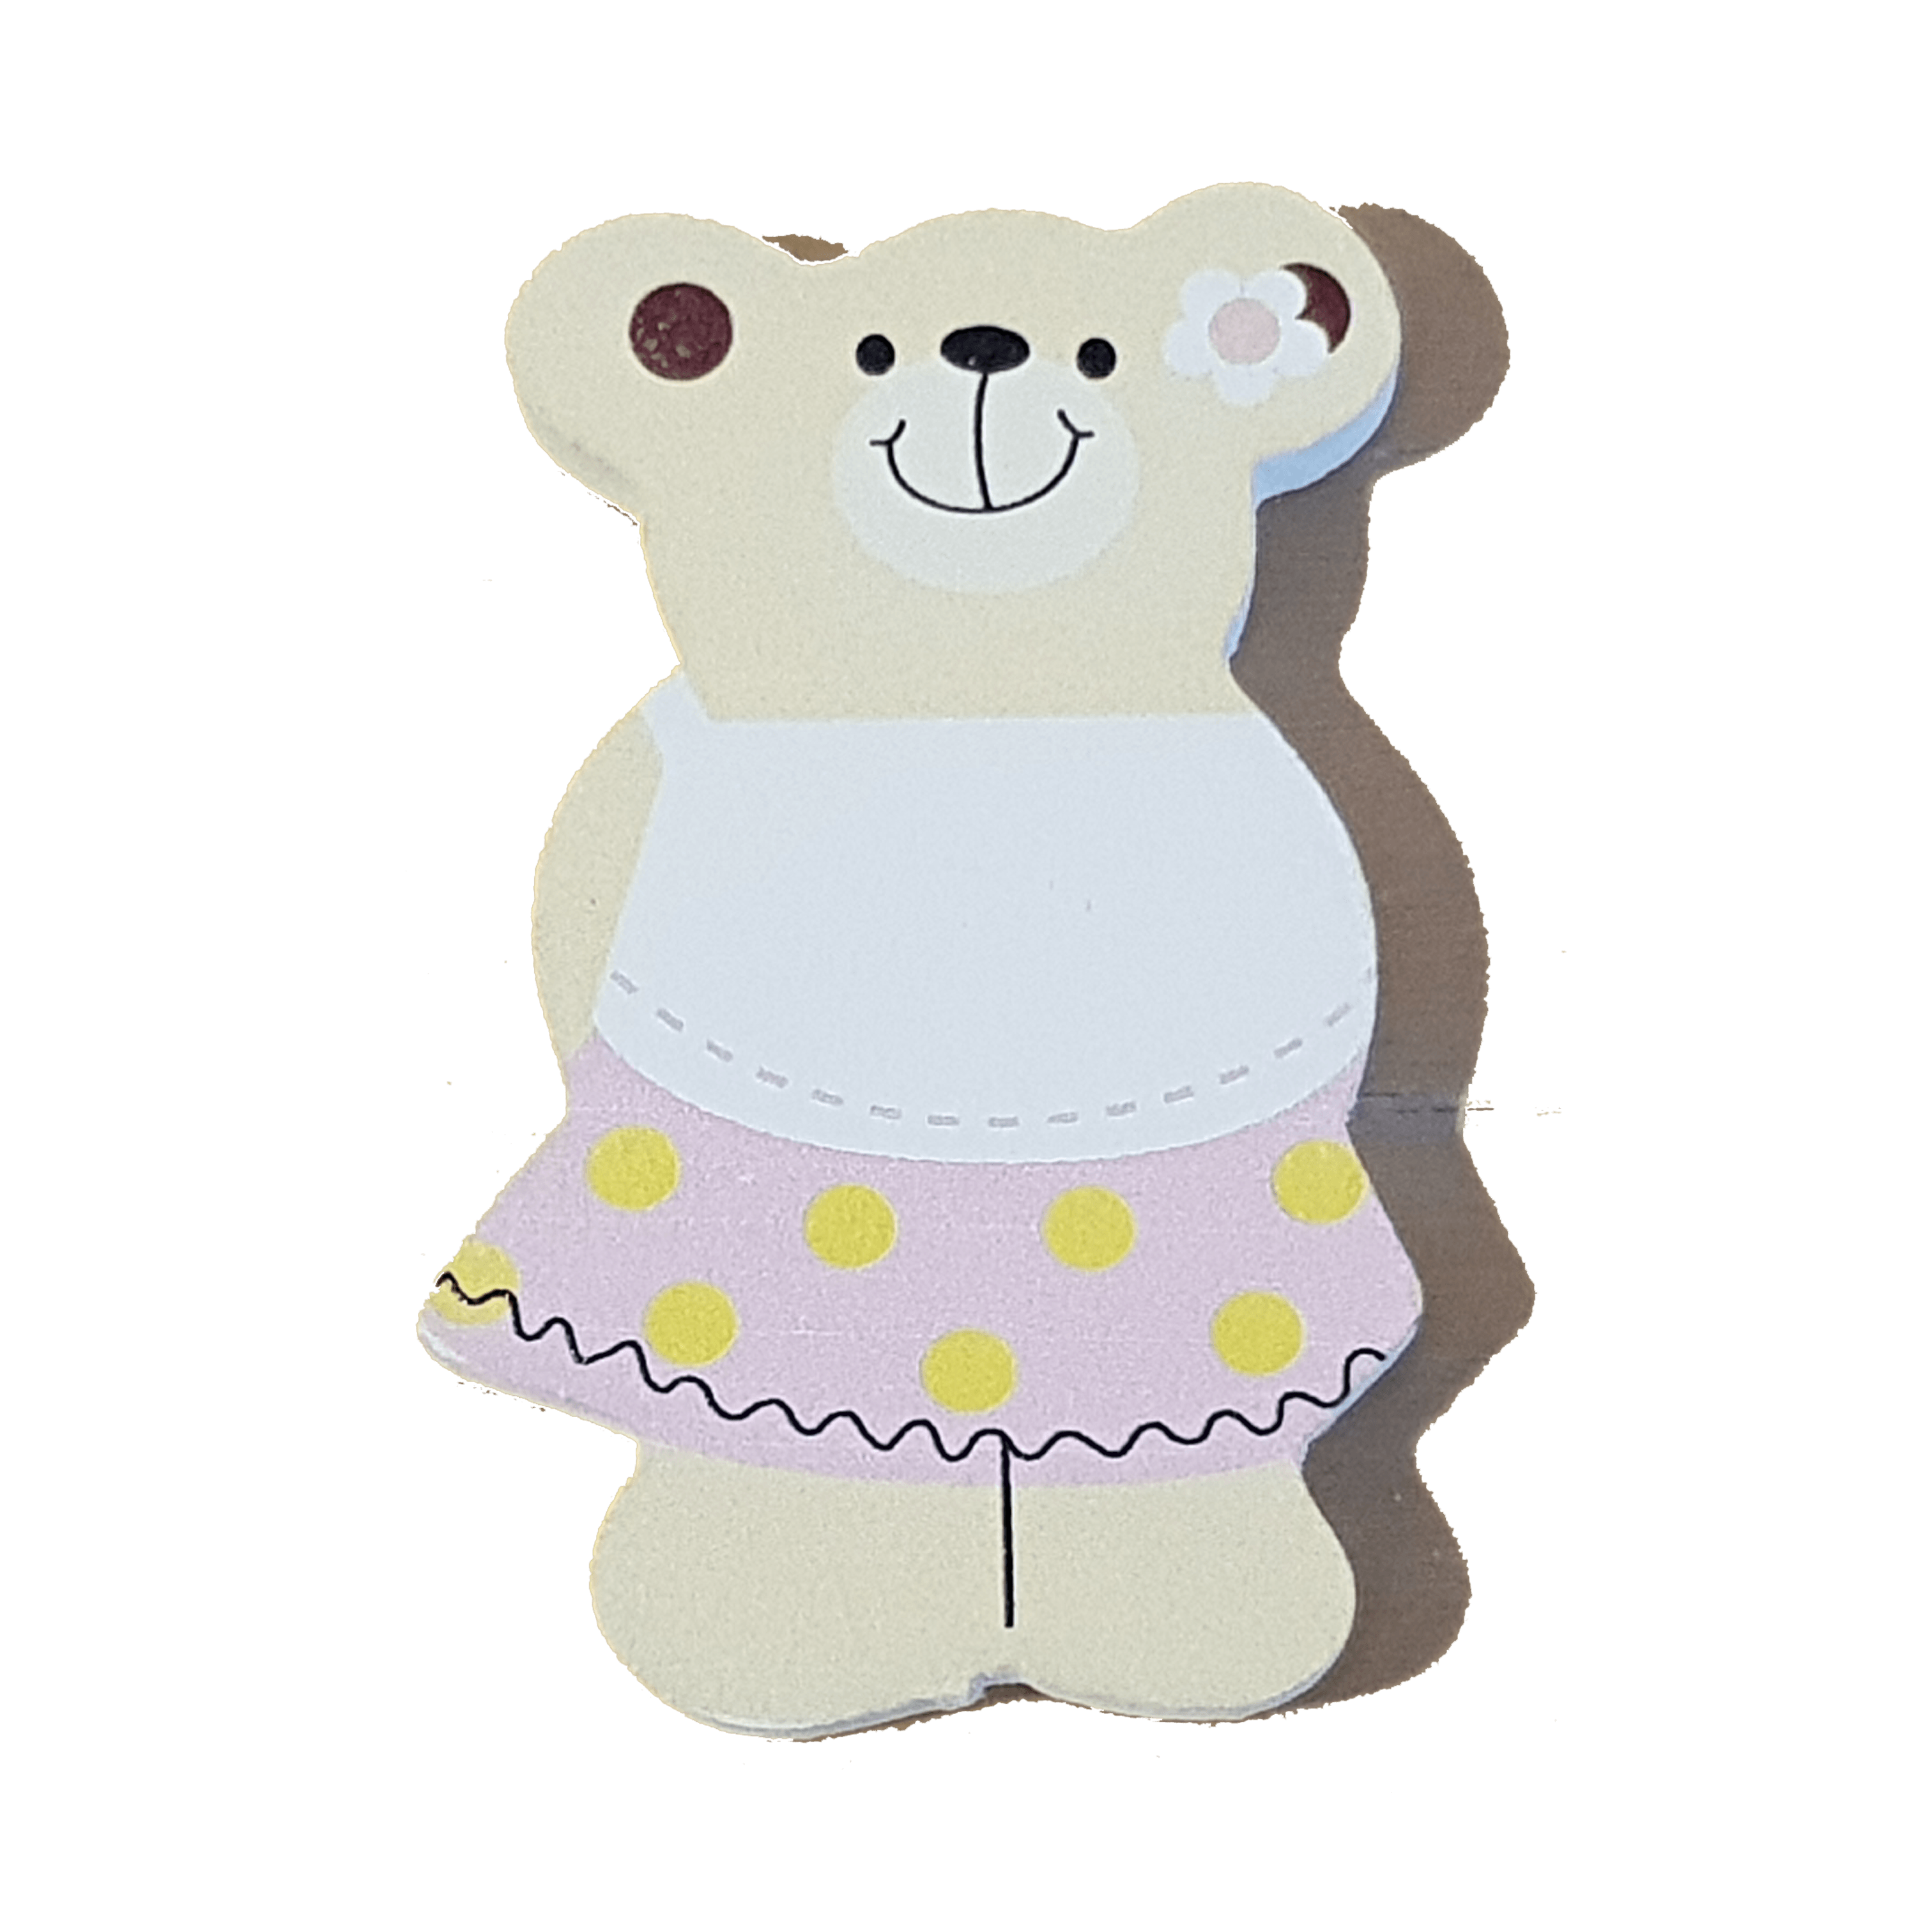 C&F Wooden Little Girl Bear Character - Polka Dot Skirt